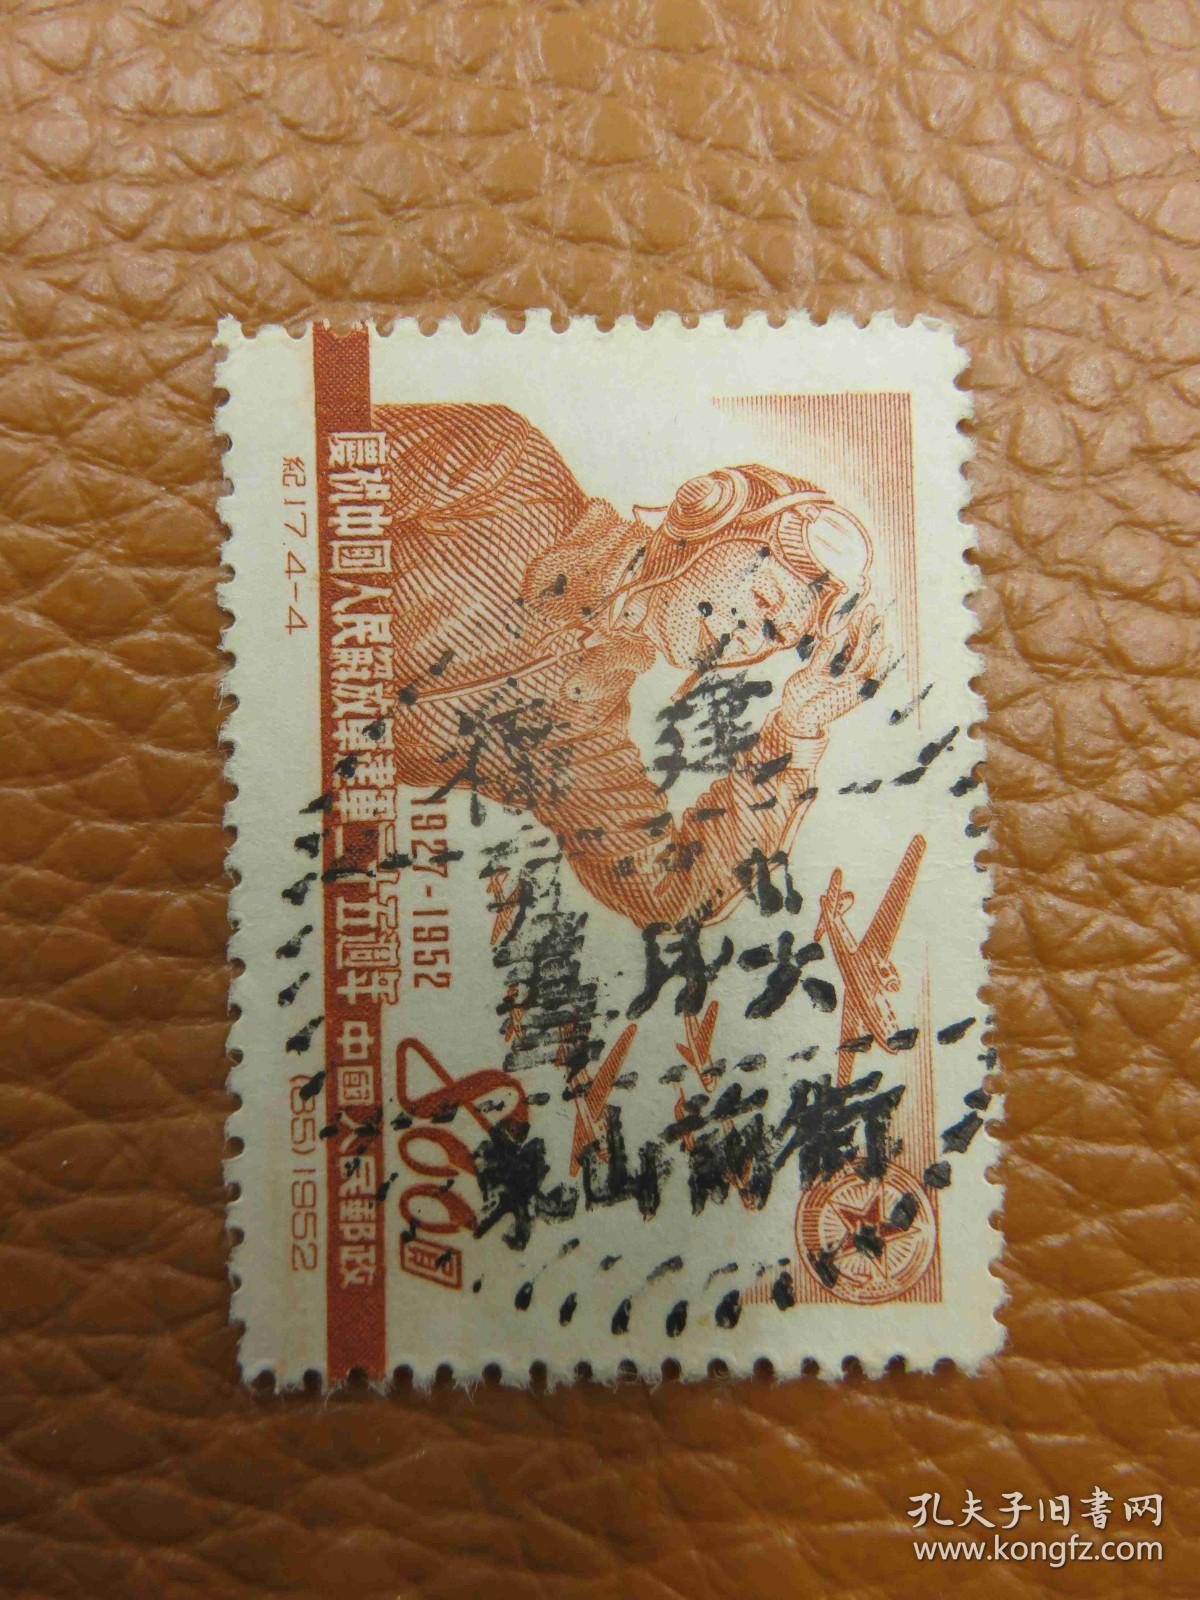 10962.纪念邮票销邮戳1953年1月26日福建东山前街-福建省漳州市